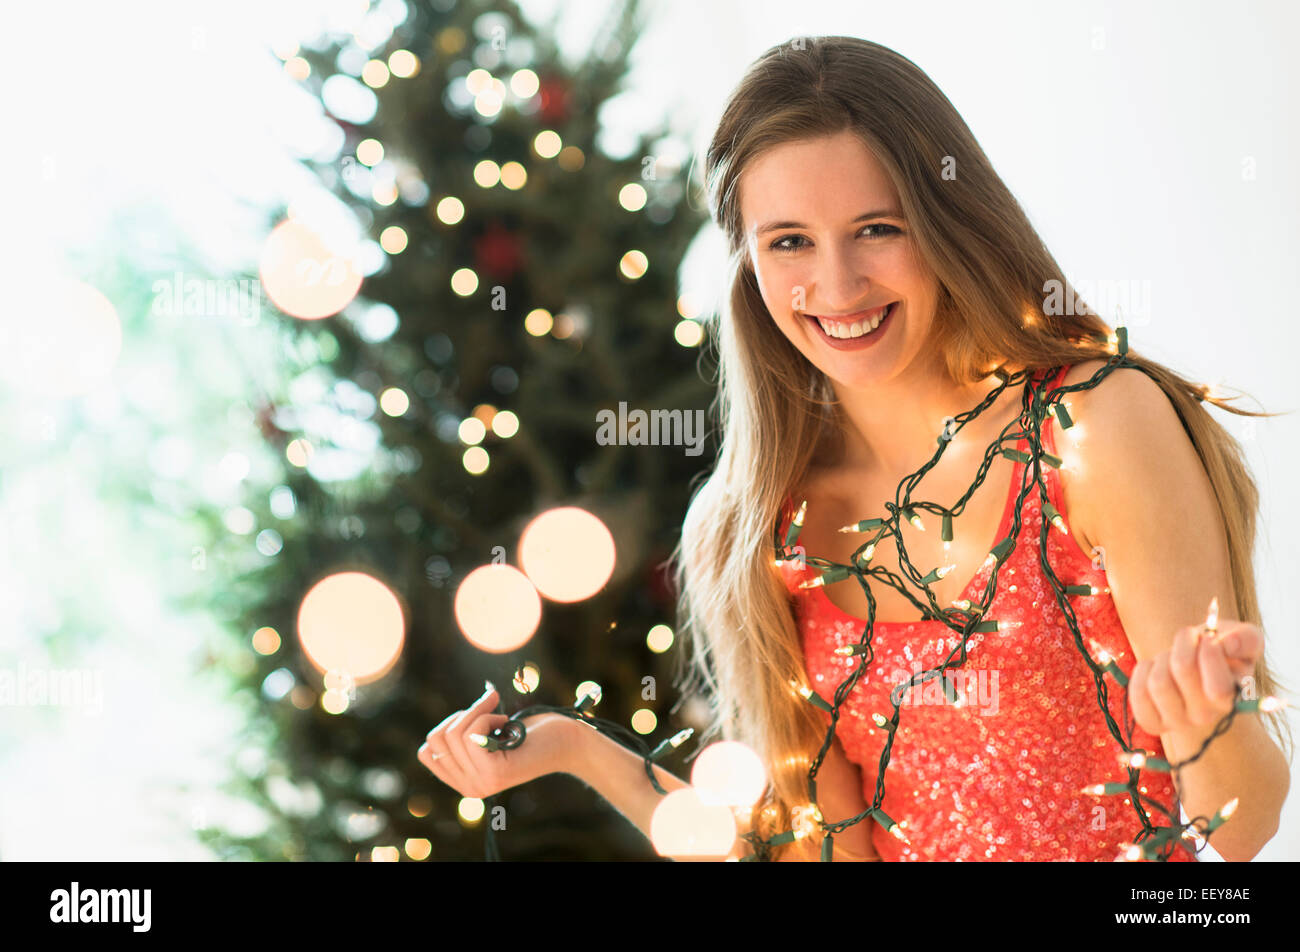 Porträt der jungen Frau schmücken Weihnachtsbaum mit Weihnachtsbeleuchtung Stockfoto